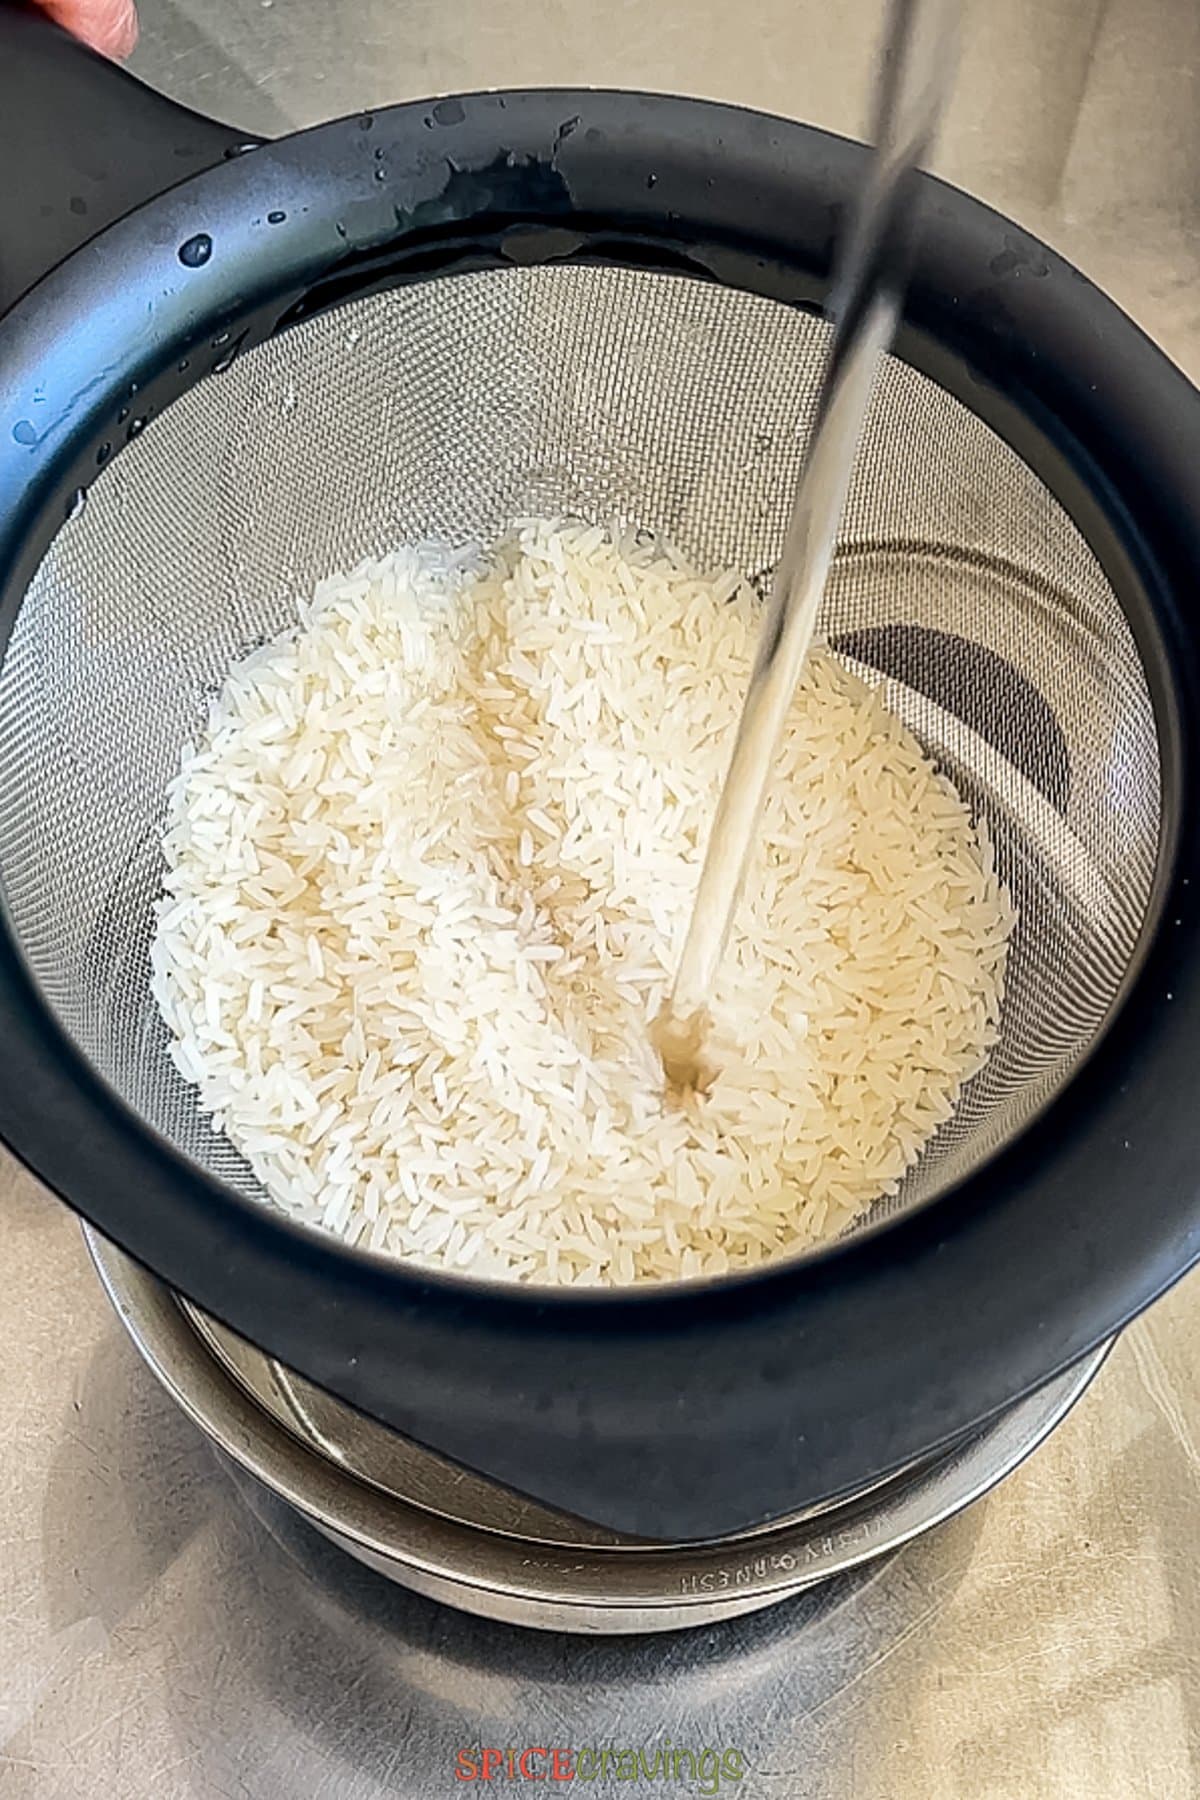 rinsing jasmine rice over running water